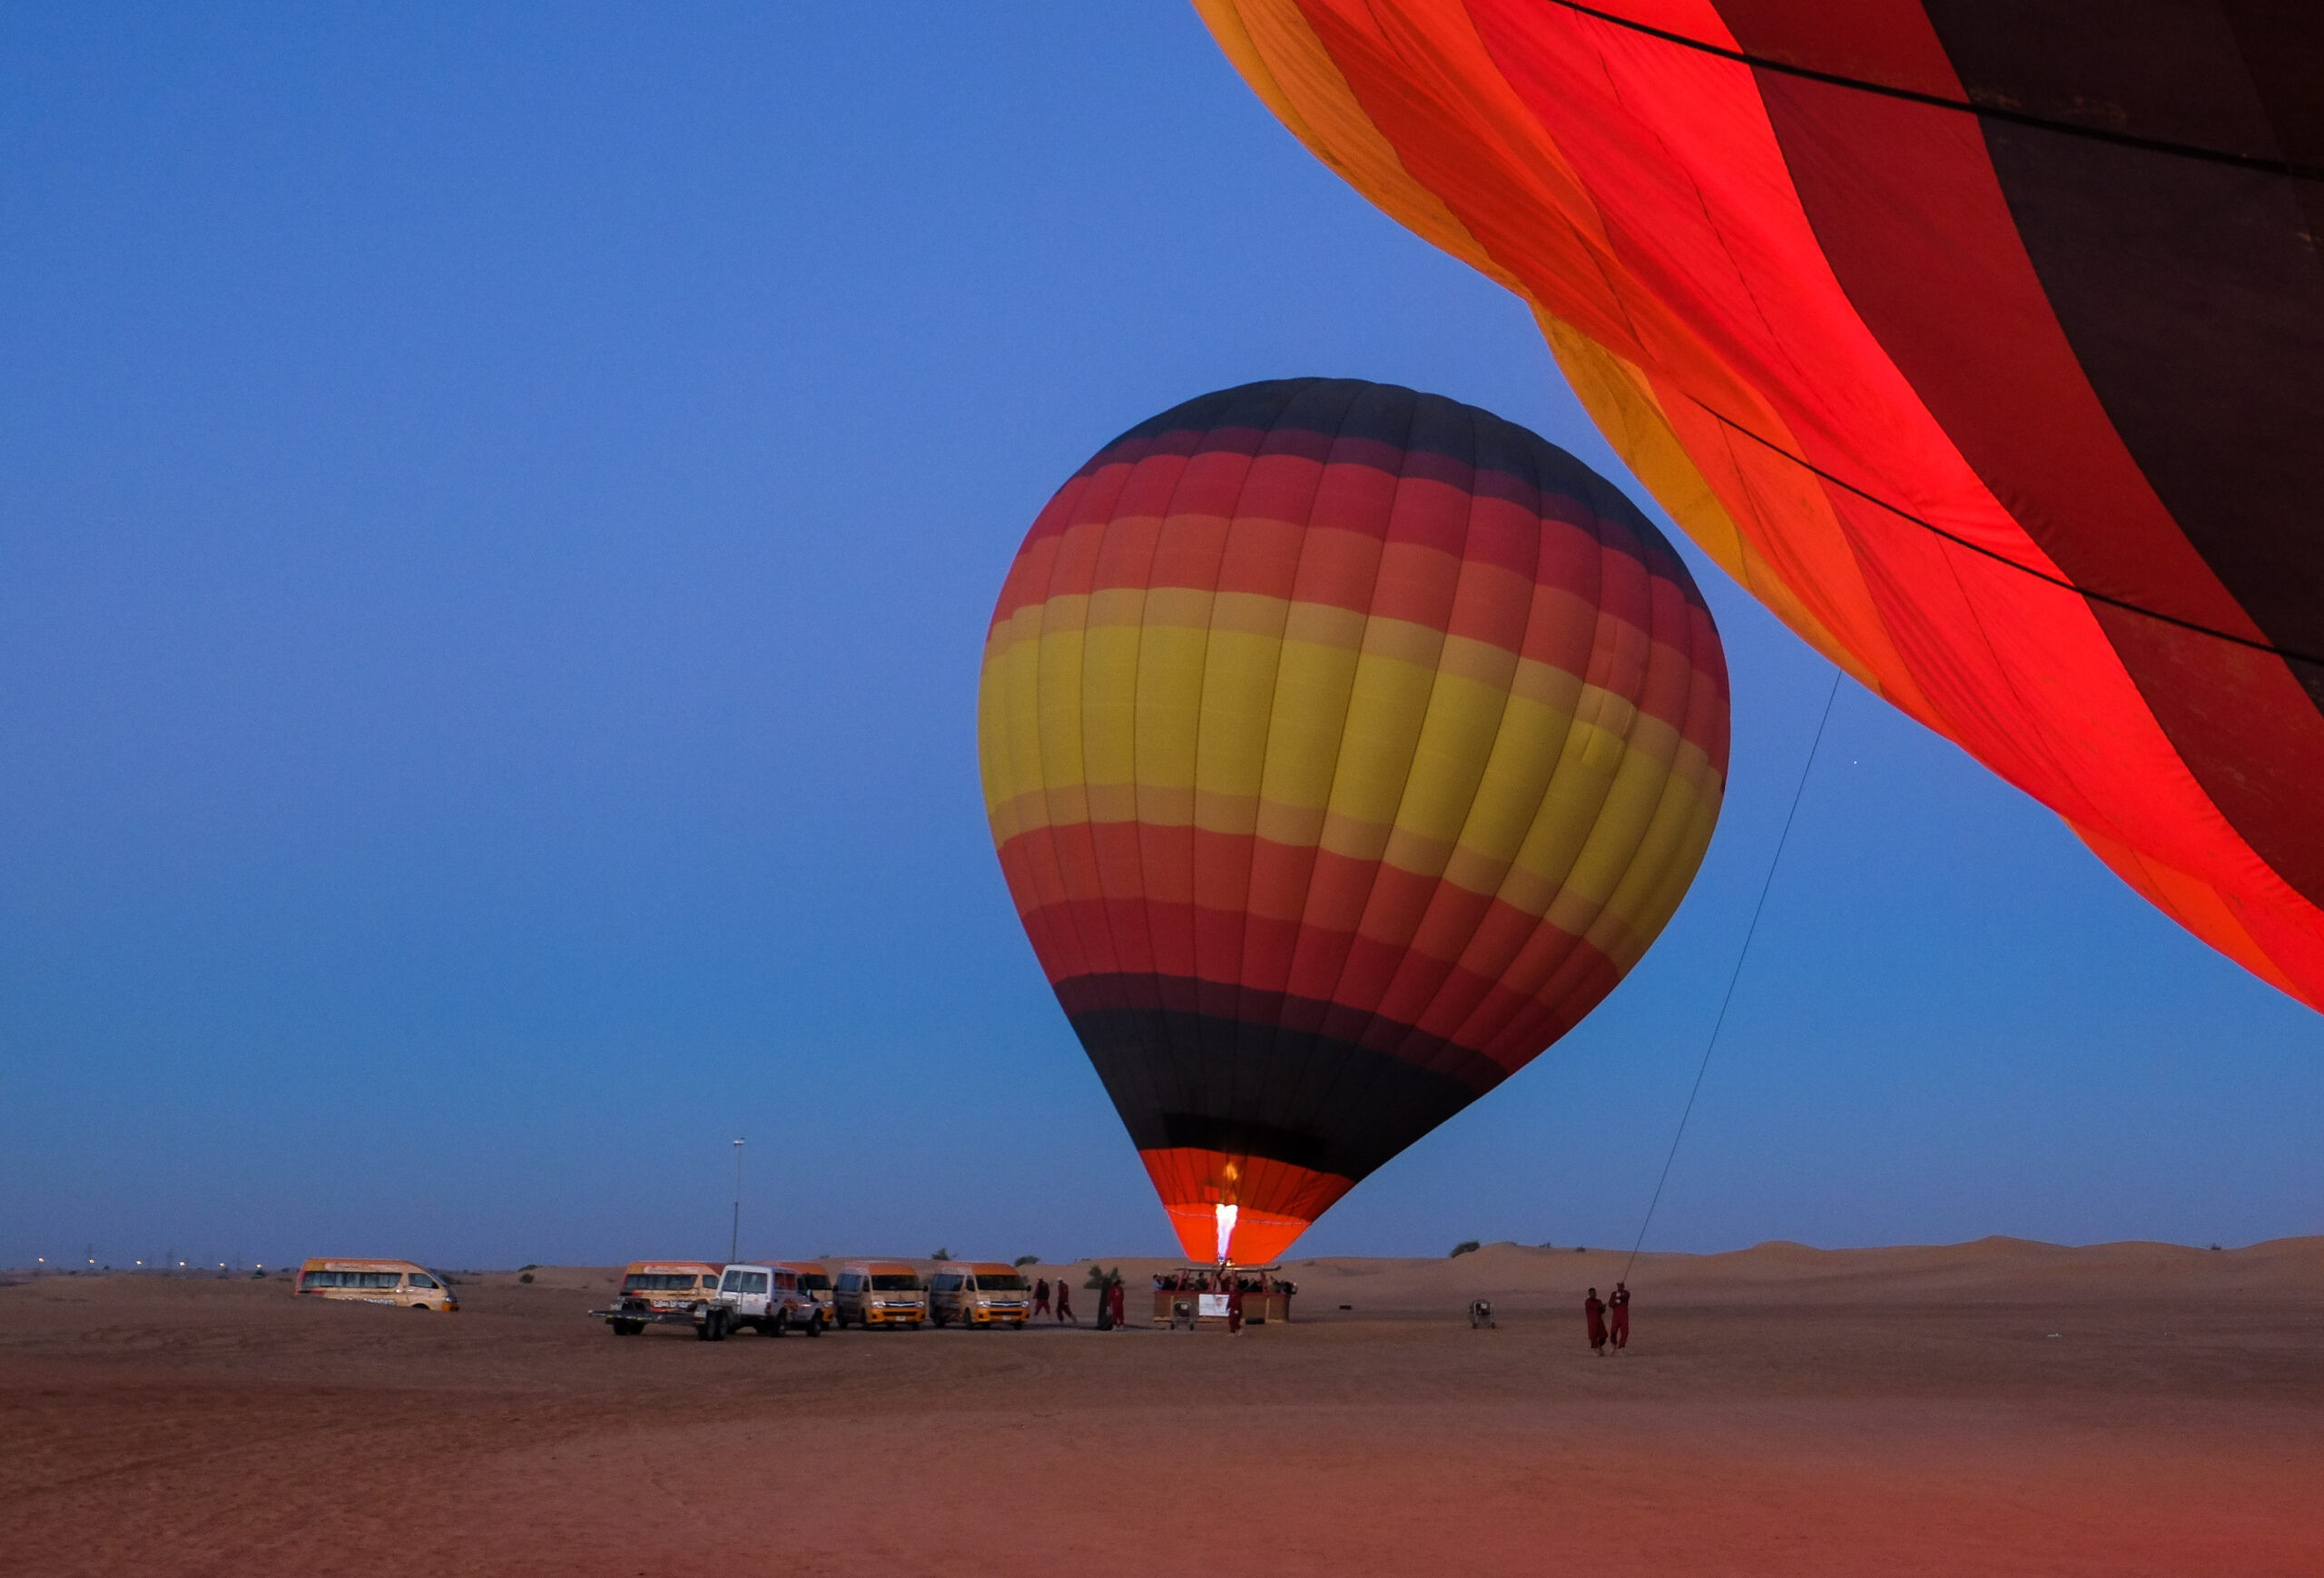 Dubai hot air balloon rides - Launch site